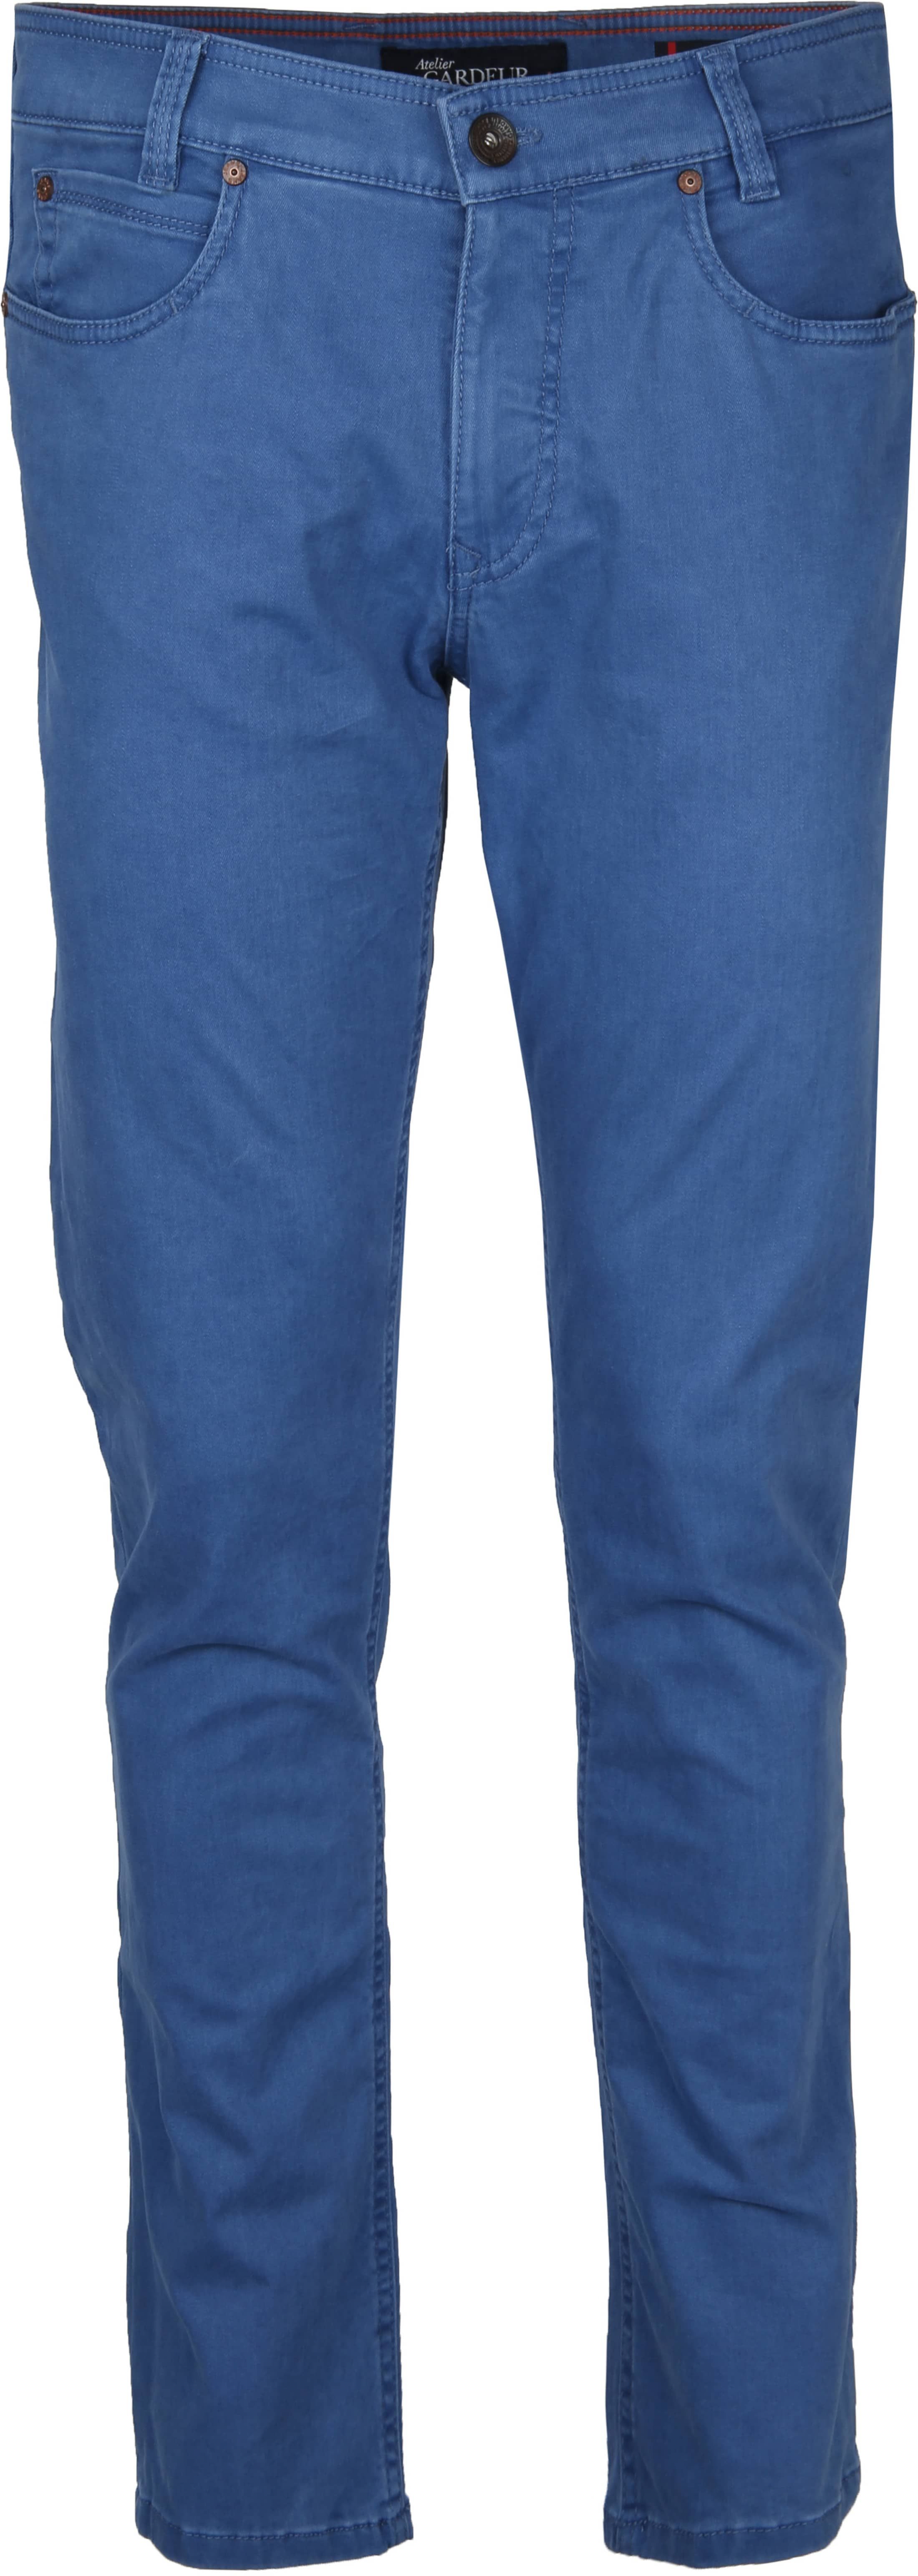 Gardeur Batu Pants Blue size W 33